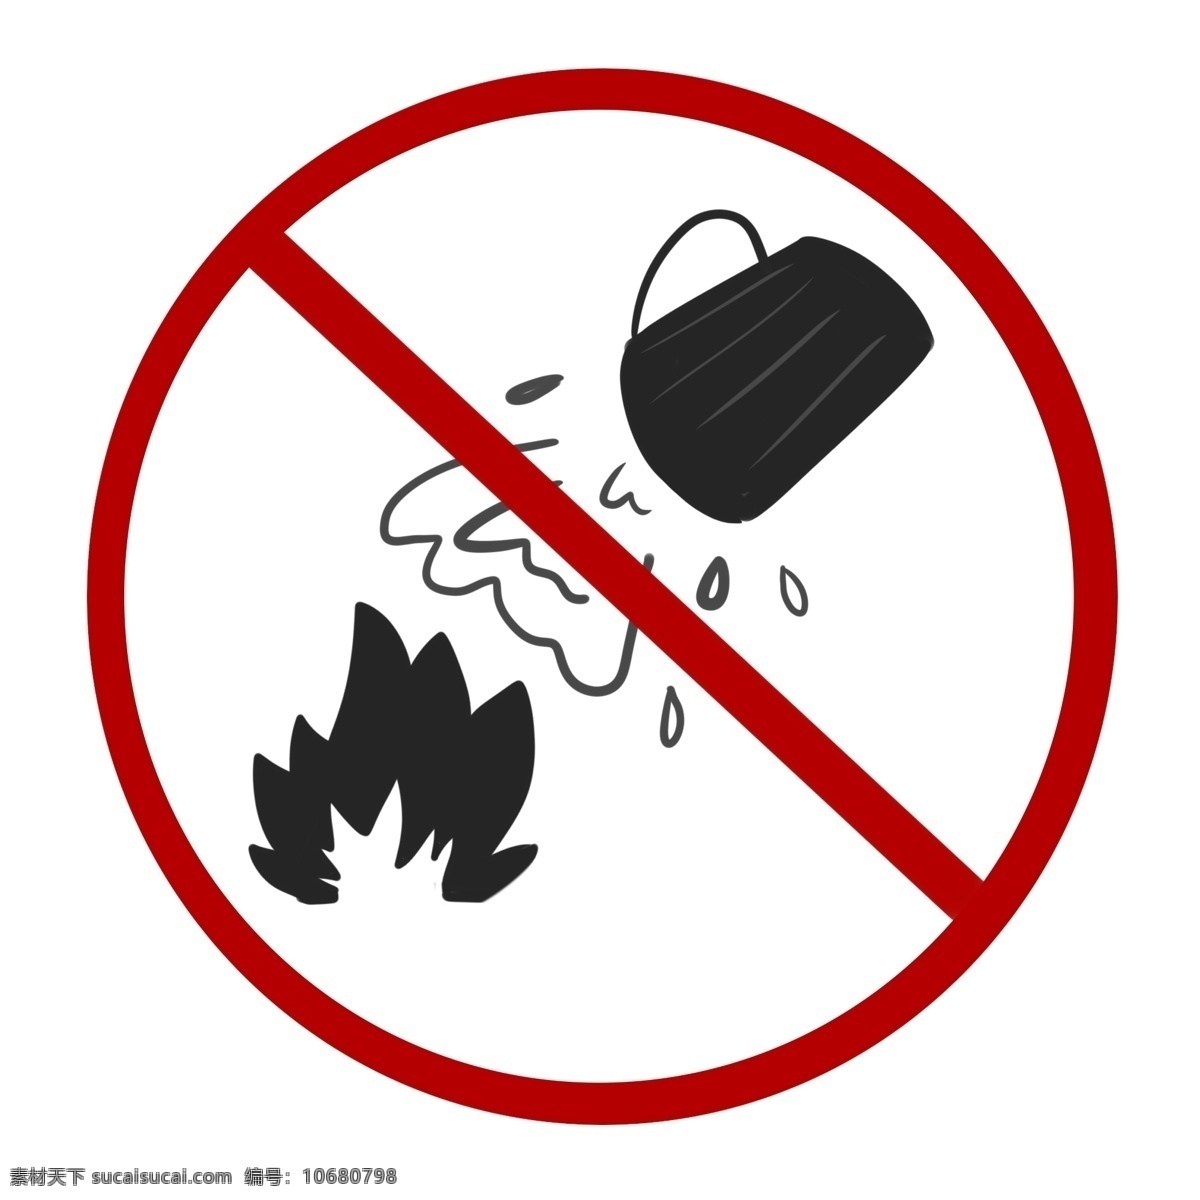 禁止 用水 灭火 图标 红色标志 禁止用水灭火 警示标示 警示牌 禁止标志 禁止火源